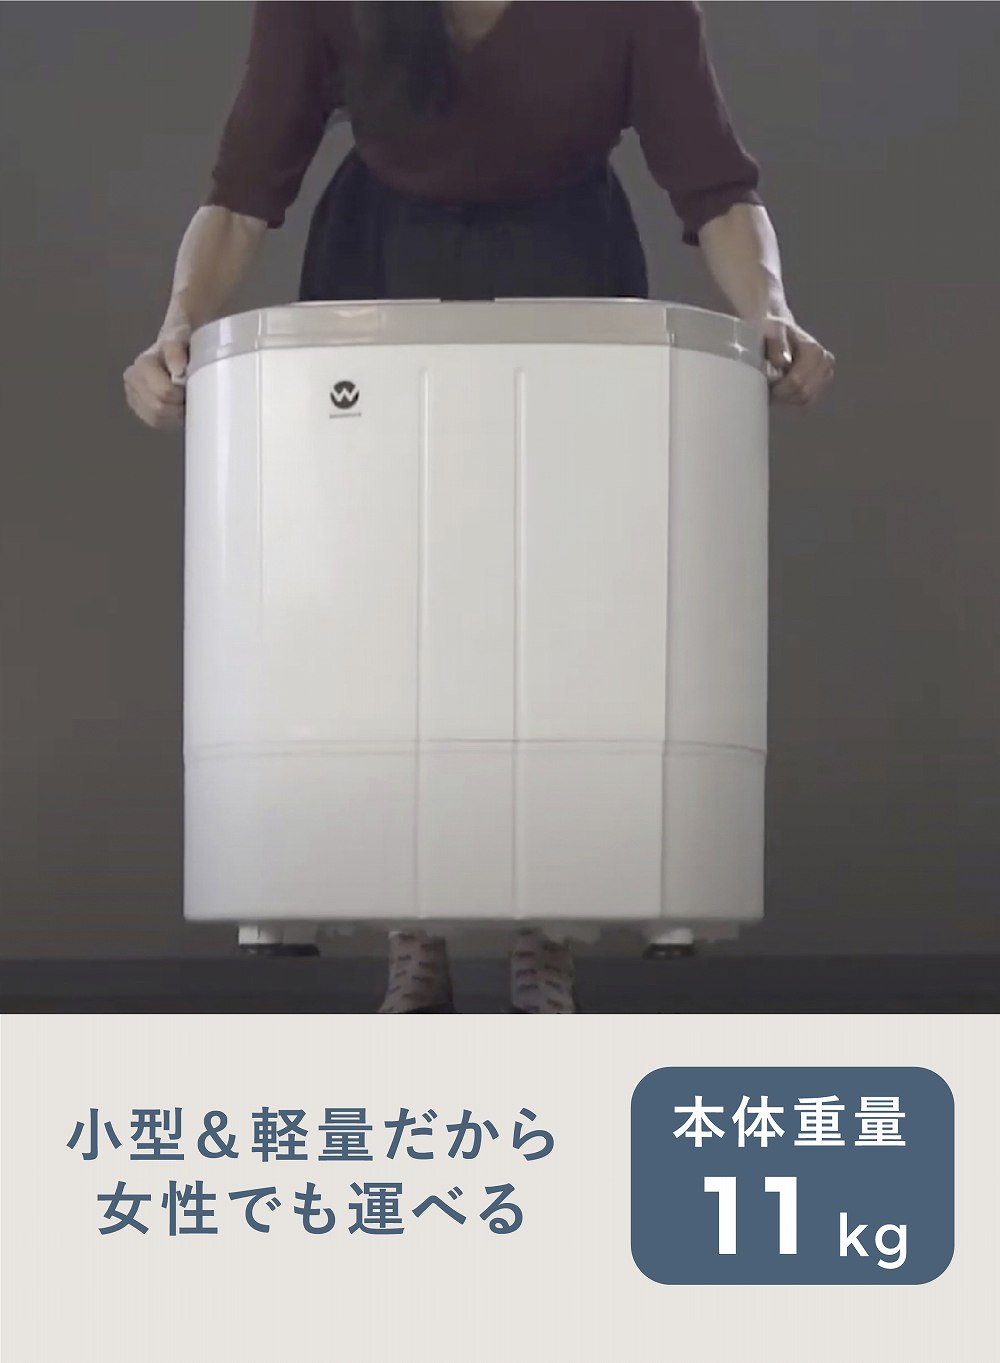 ウォッシュマン 2層式小型洗濯機\nTOM-05w シービージャパン